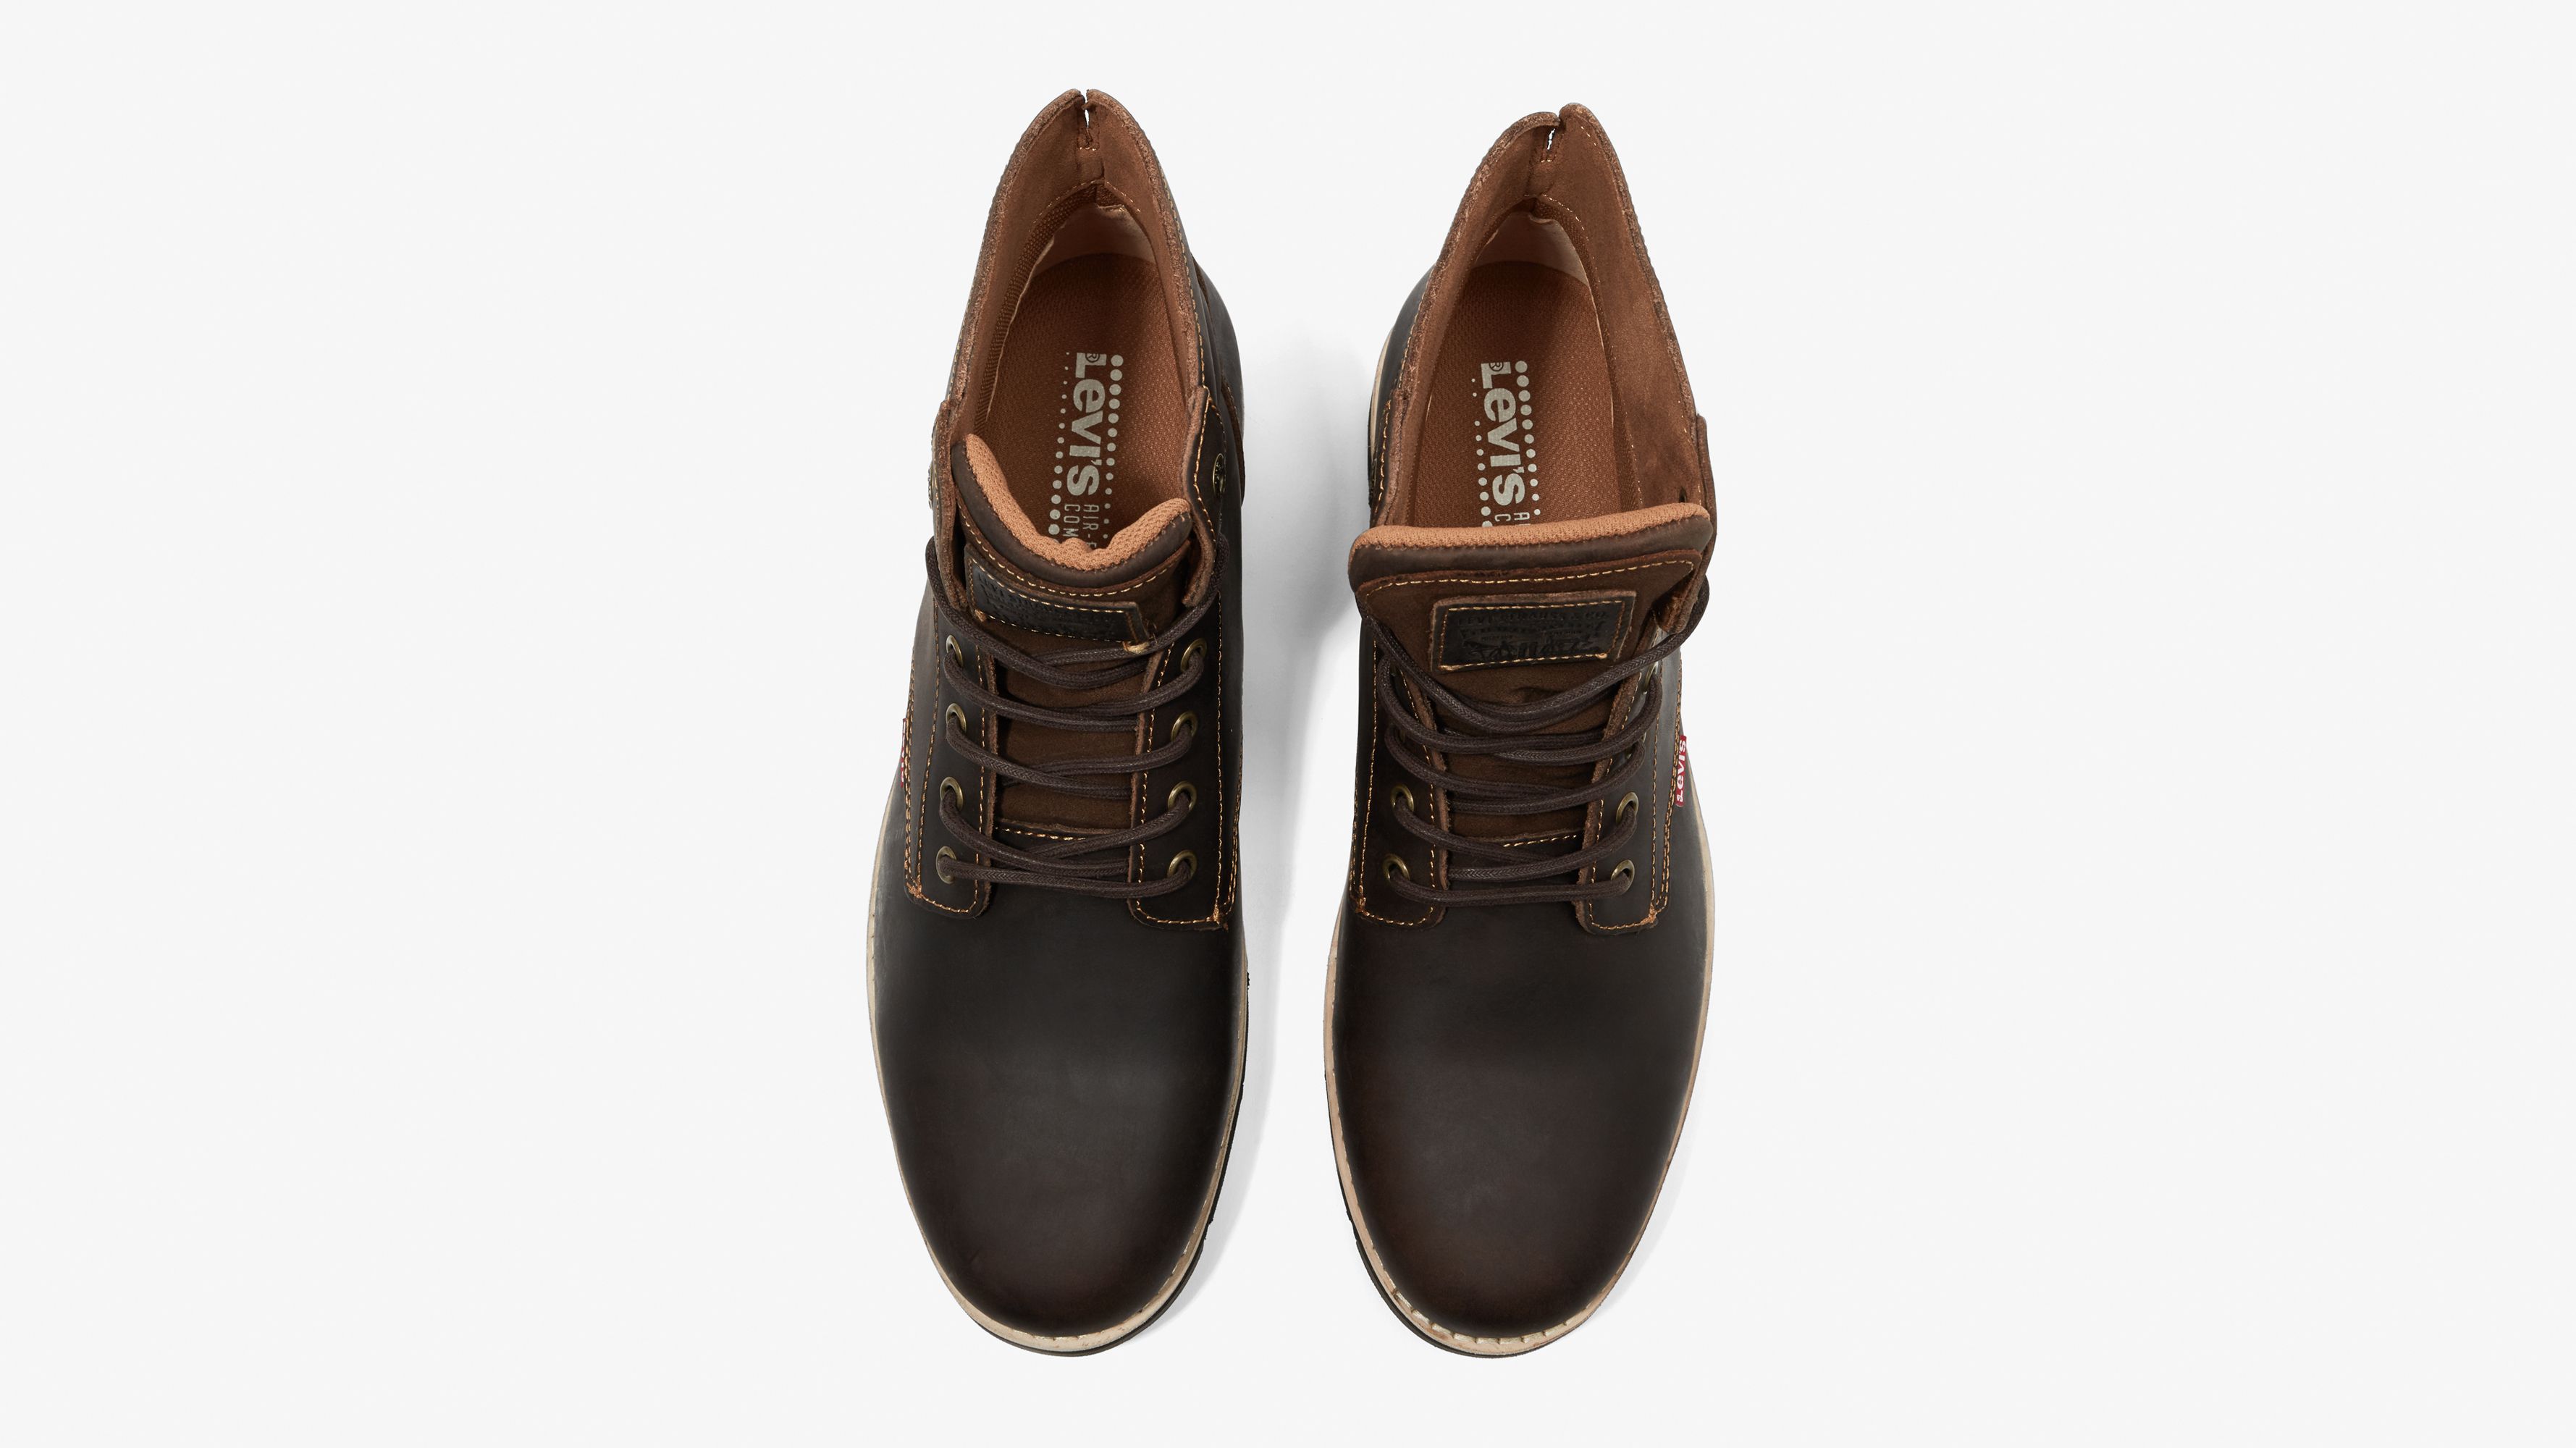 Jax Plus Boots - Brown | Levi's® GR